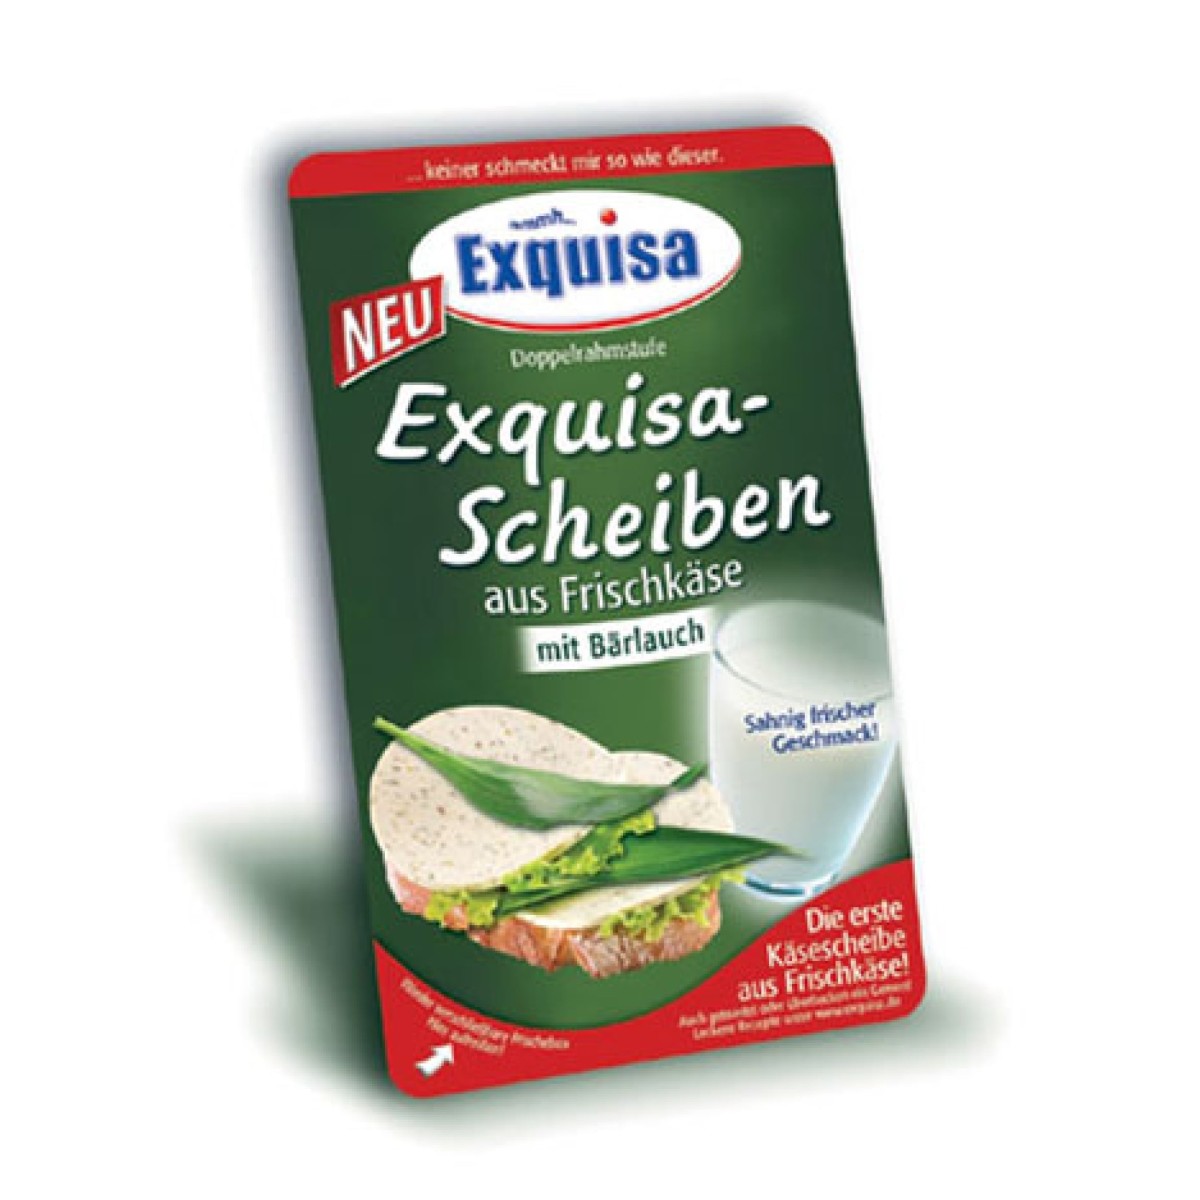 Exquisa-Scheiben auf Frischkäse Bärlauch → mit REGAL